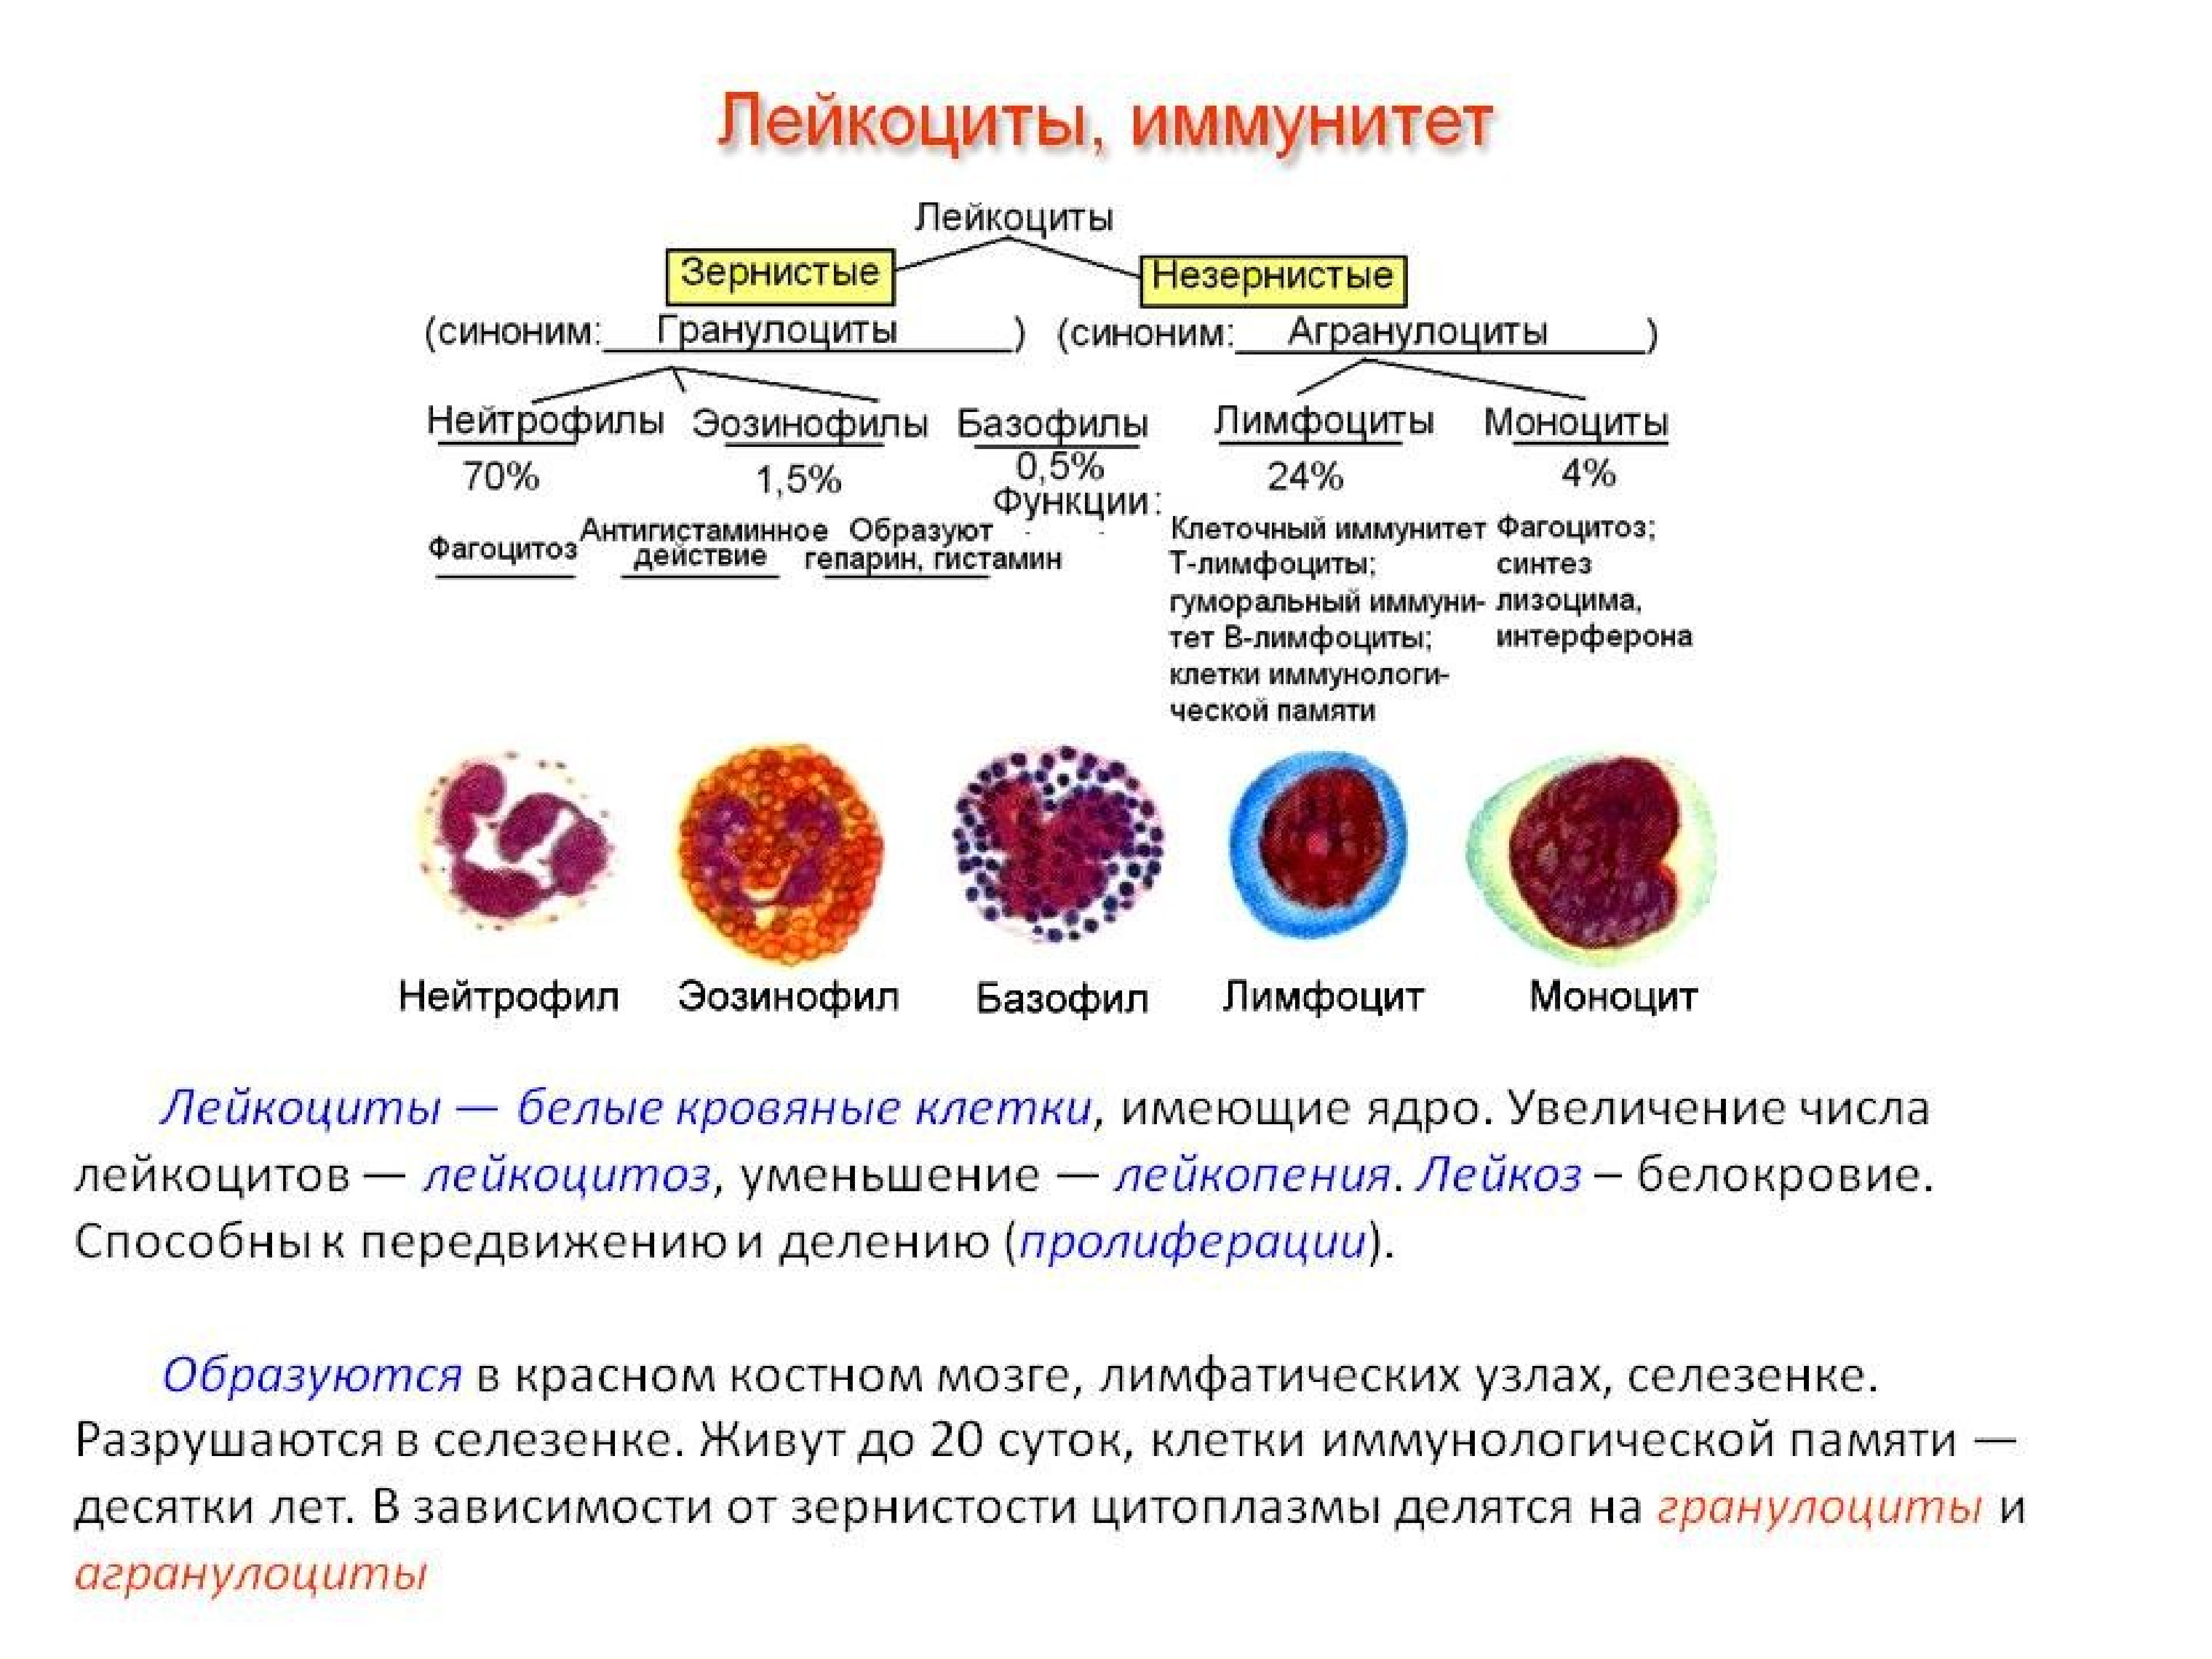 Какие клетки способны к делению. Функции нейтрофилы лимфоциты. Форменные элементы крови костный мозг. Клетки крови моноциты лимфоциты гранулоциты. Строение нейтрофилов крови.